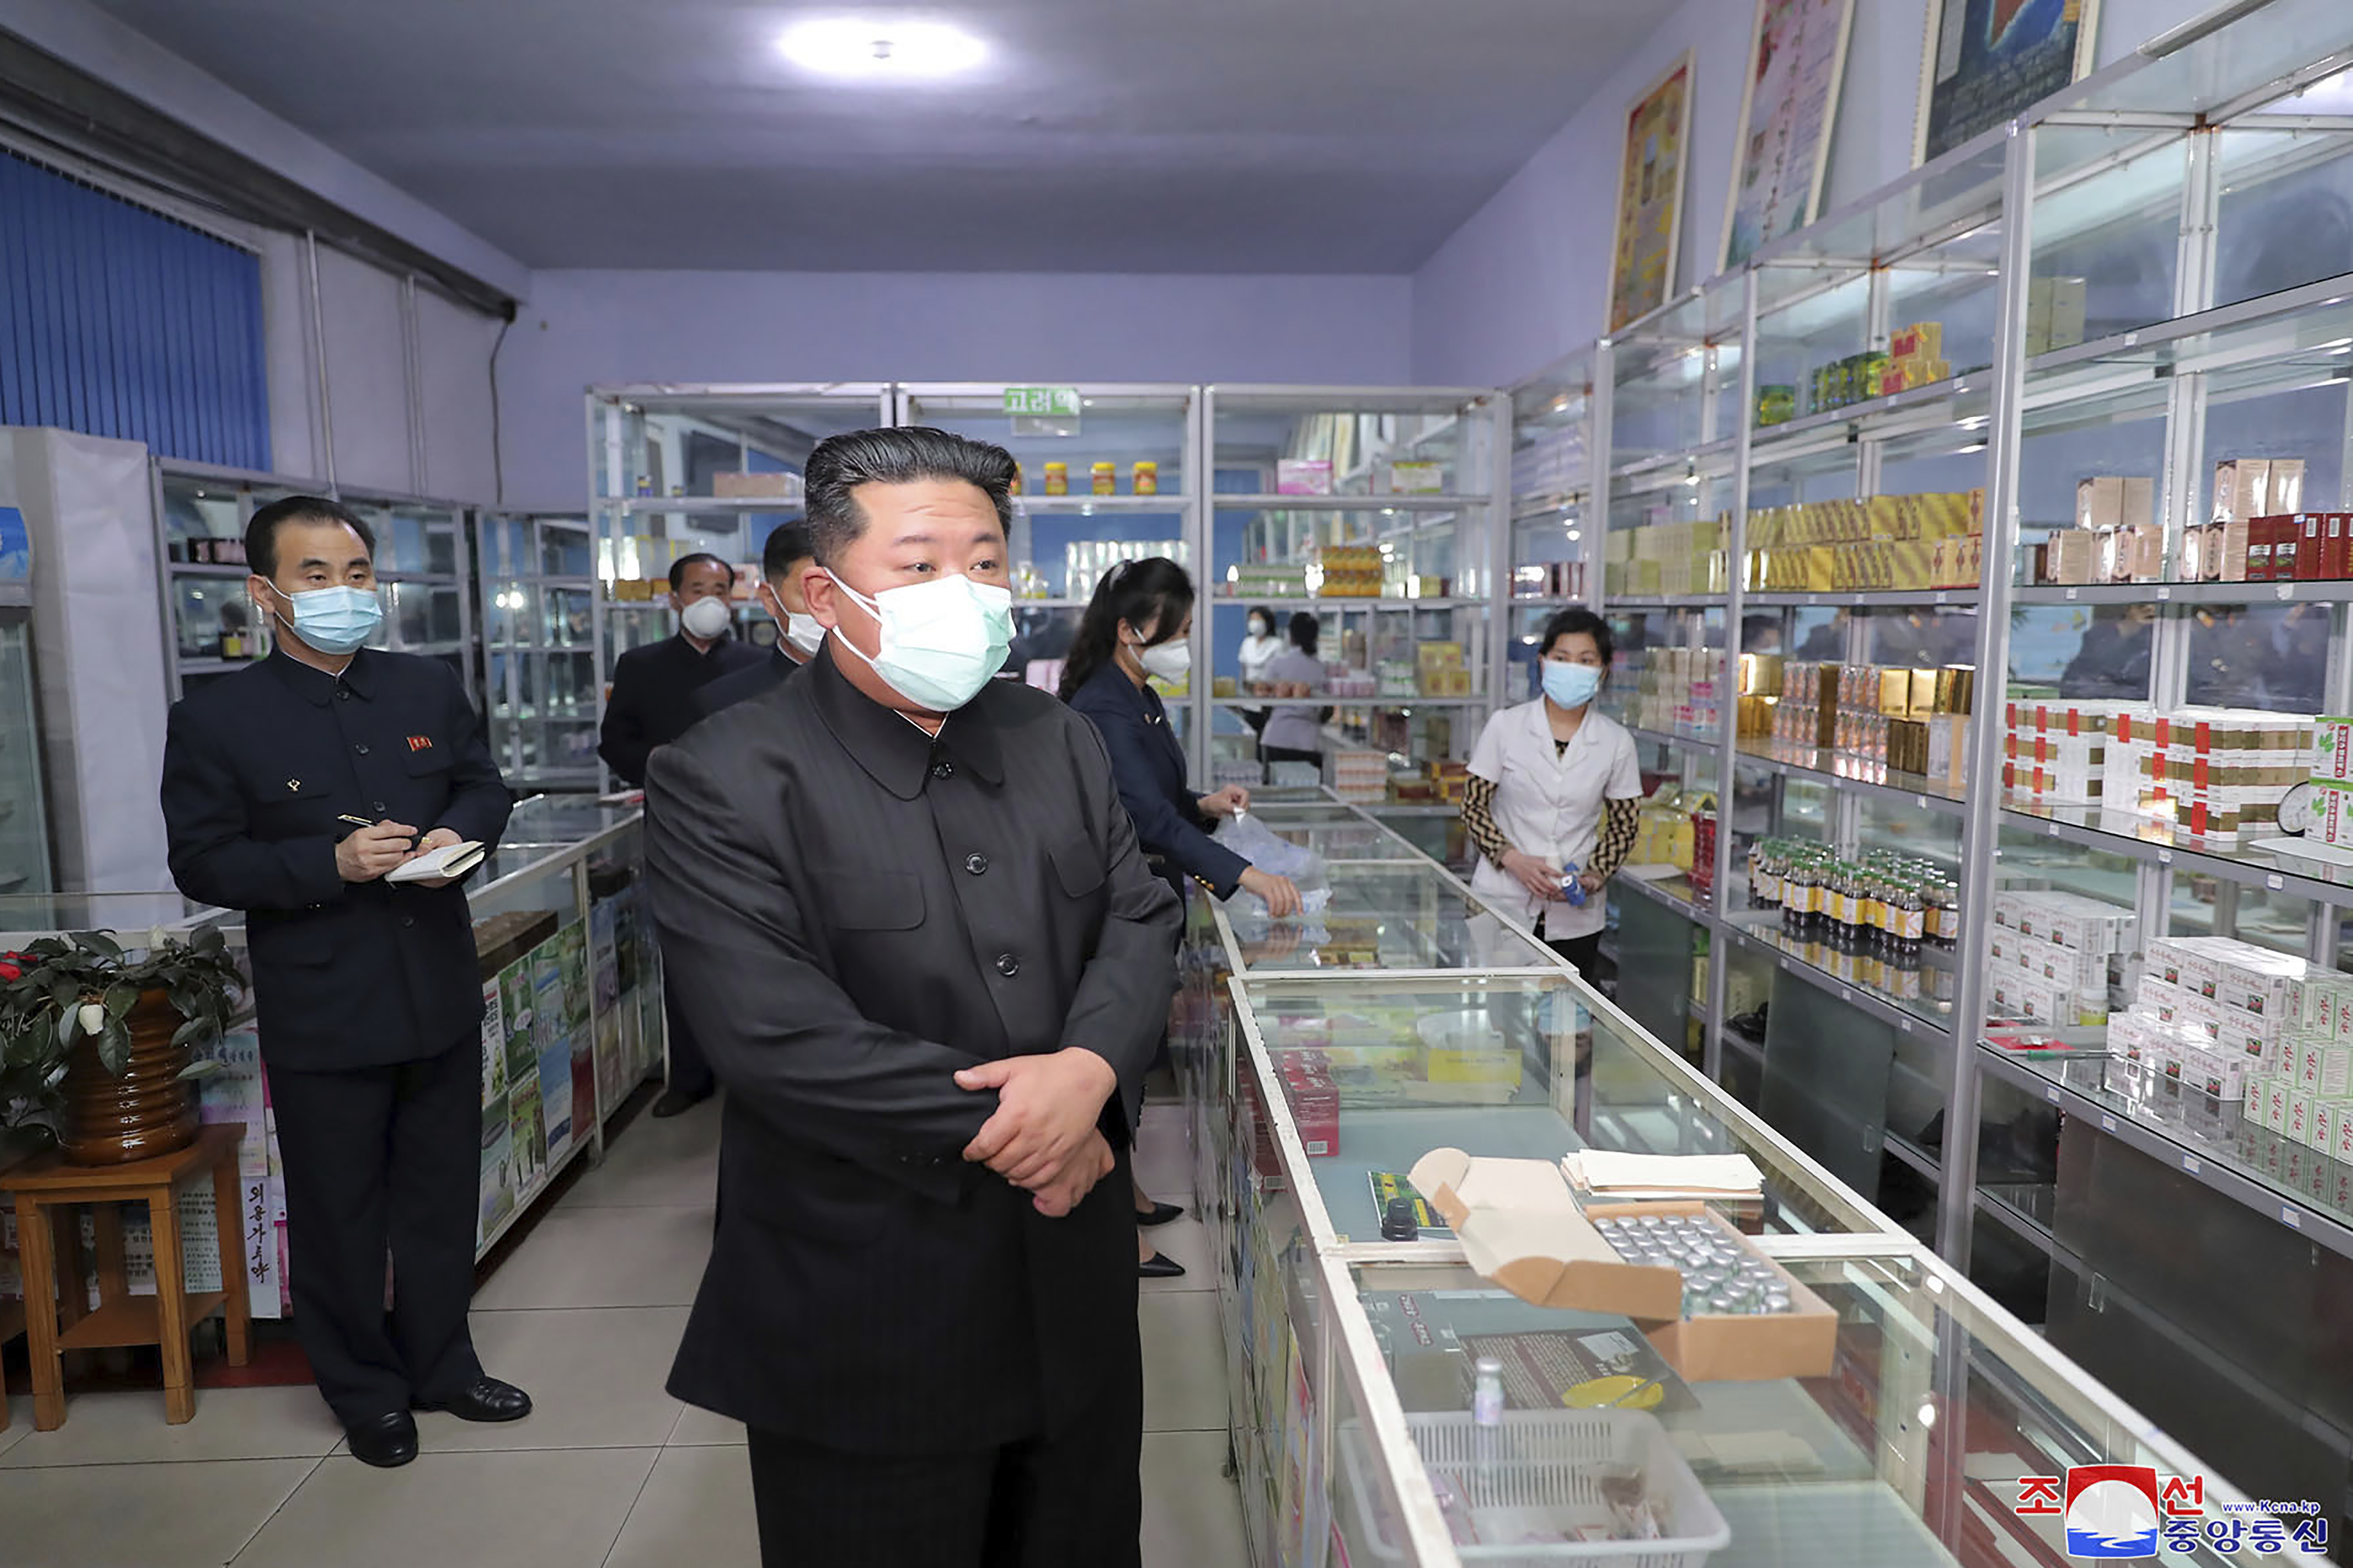 Las fotos de Kim Jong-un recorriendo farmacias en medio del confinamiento por el covid: más de dos millones de casos